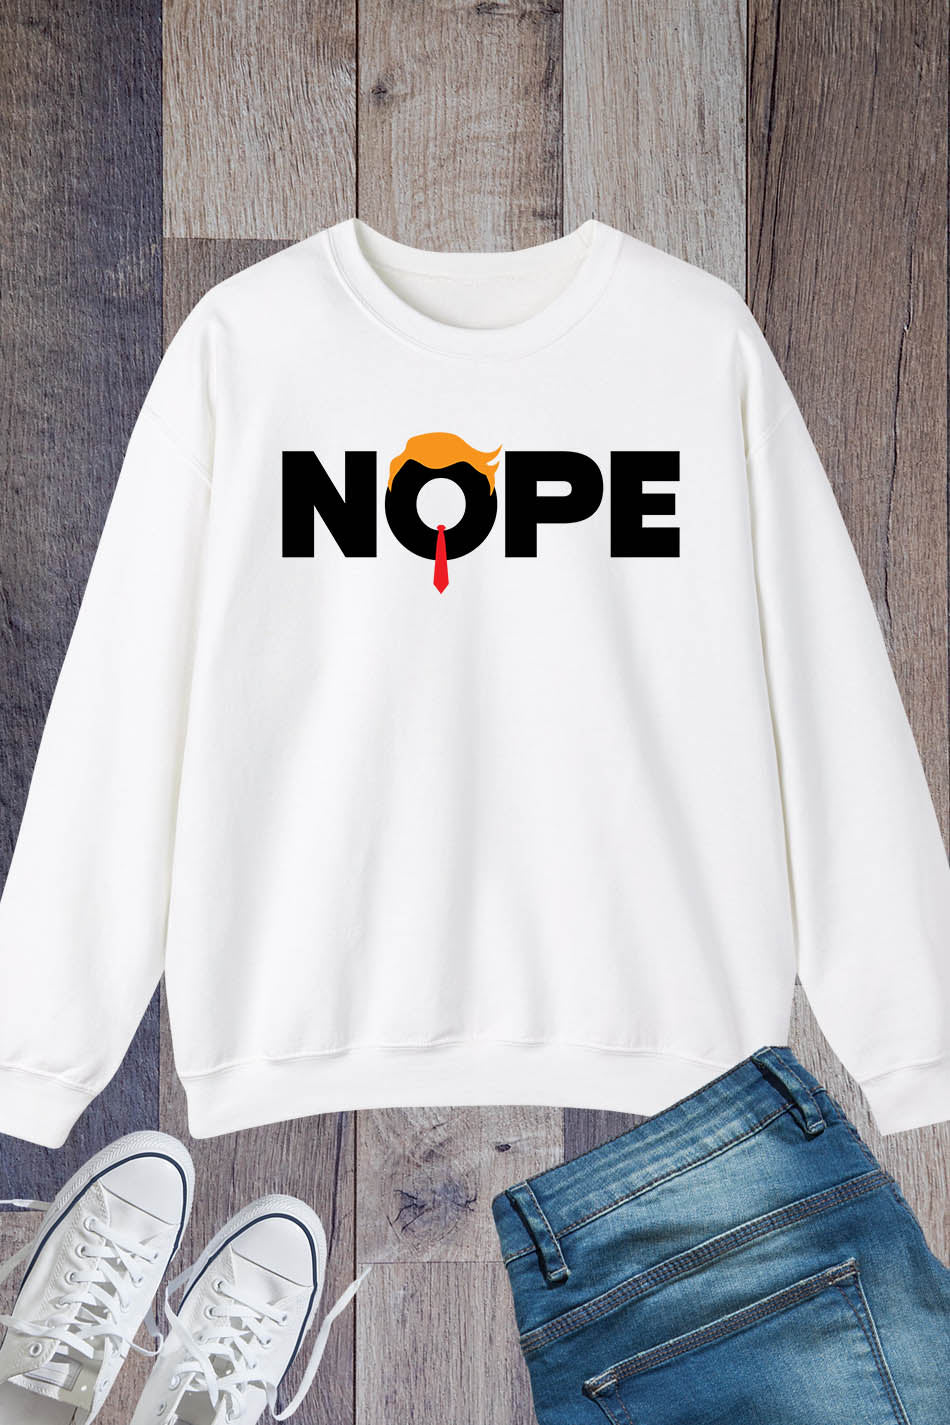 Nope Not Again Trump Sweatshirt